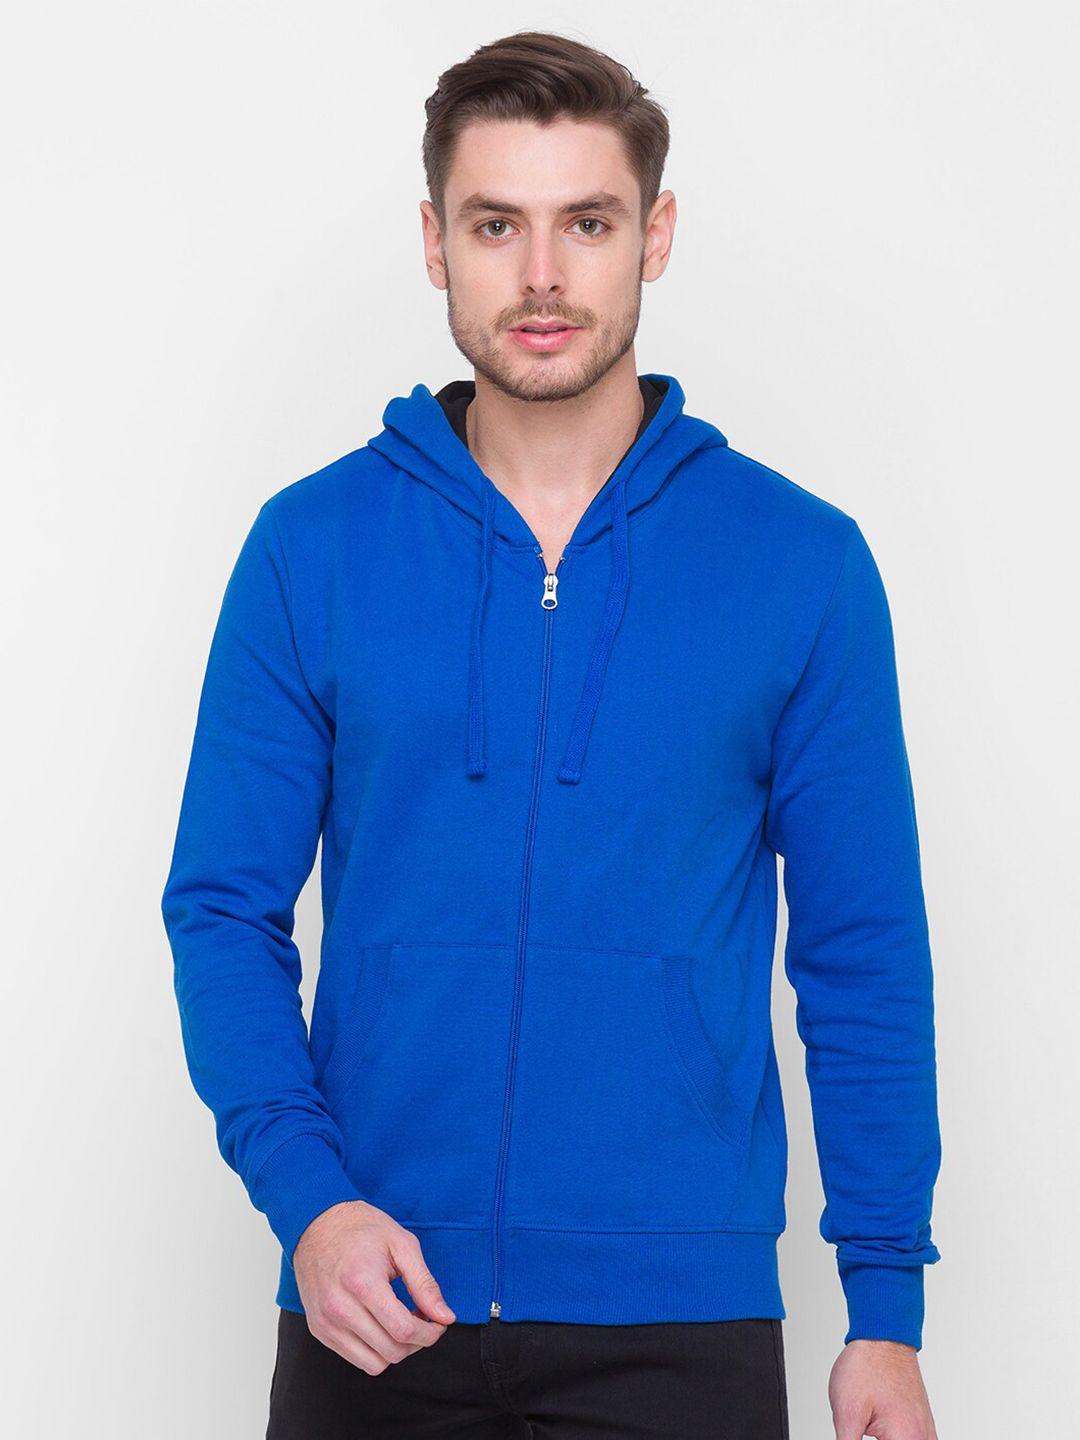 globus-men-blue-solid-hooded-sweatshirt